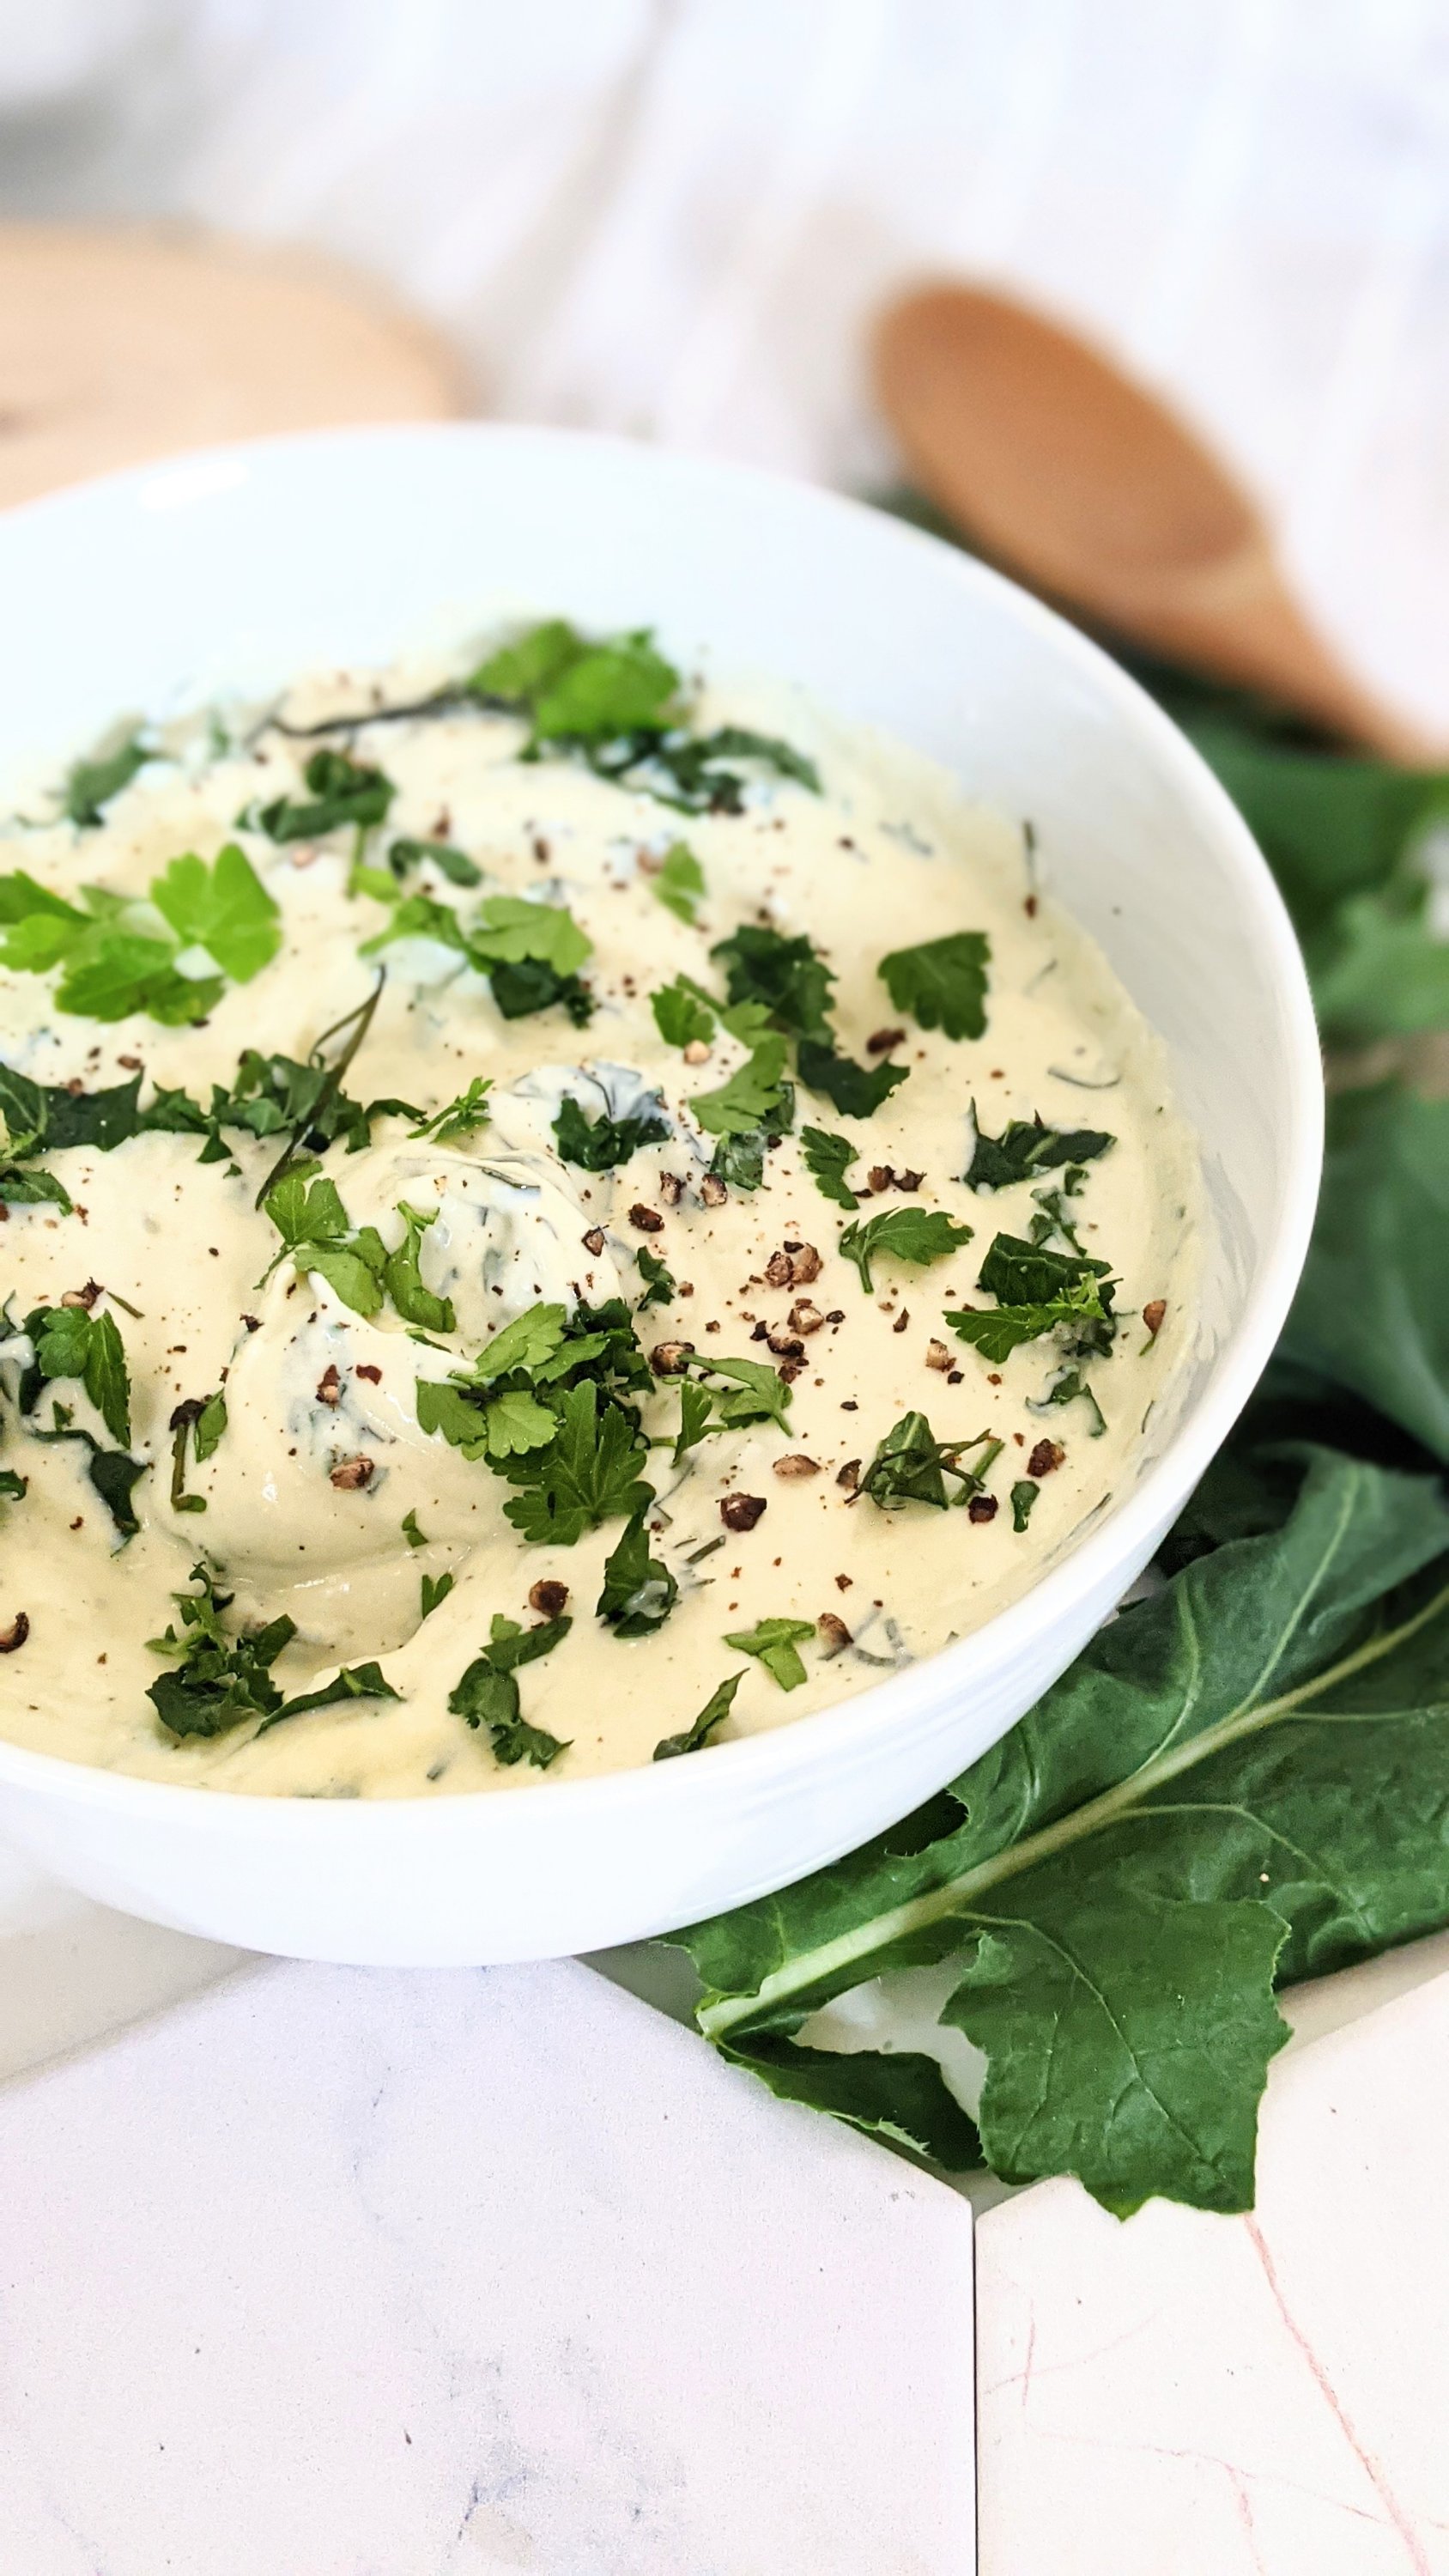 kale yogurt sauce recipe creamy kale dip vegan gluten free